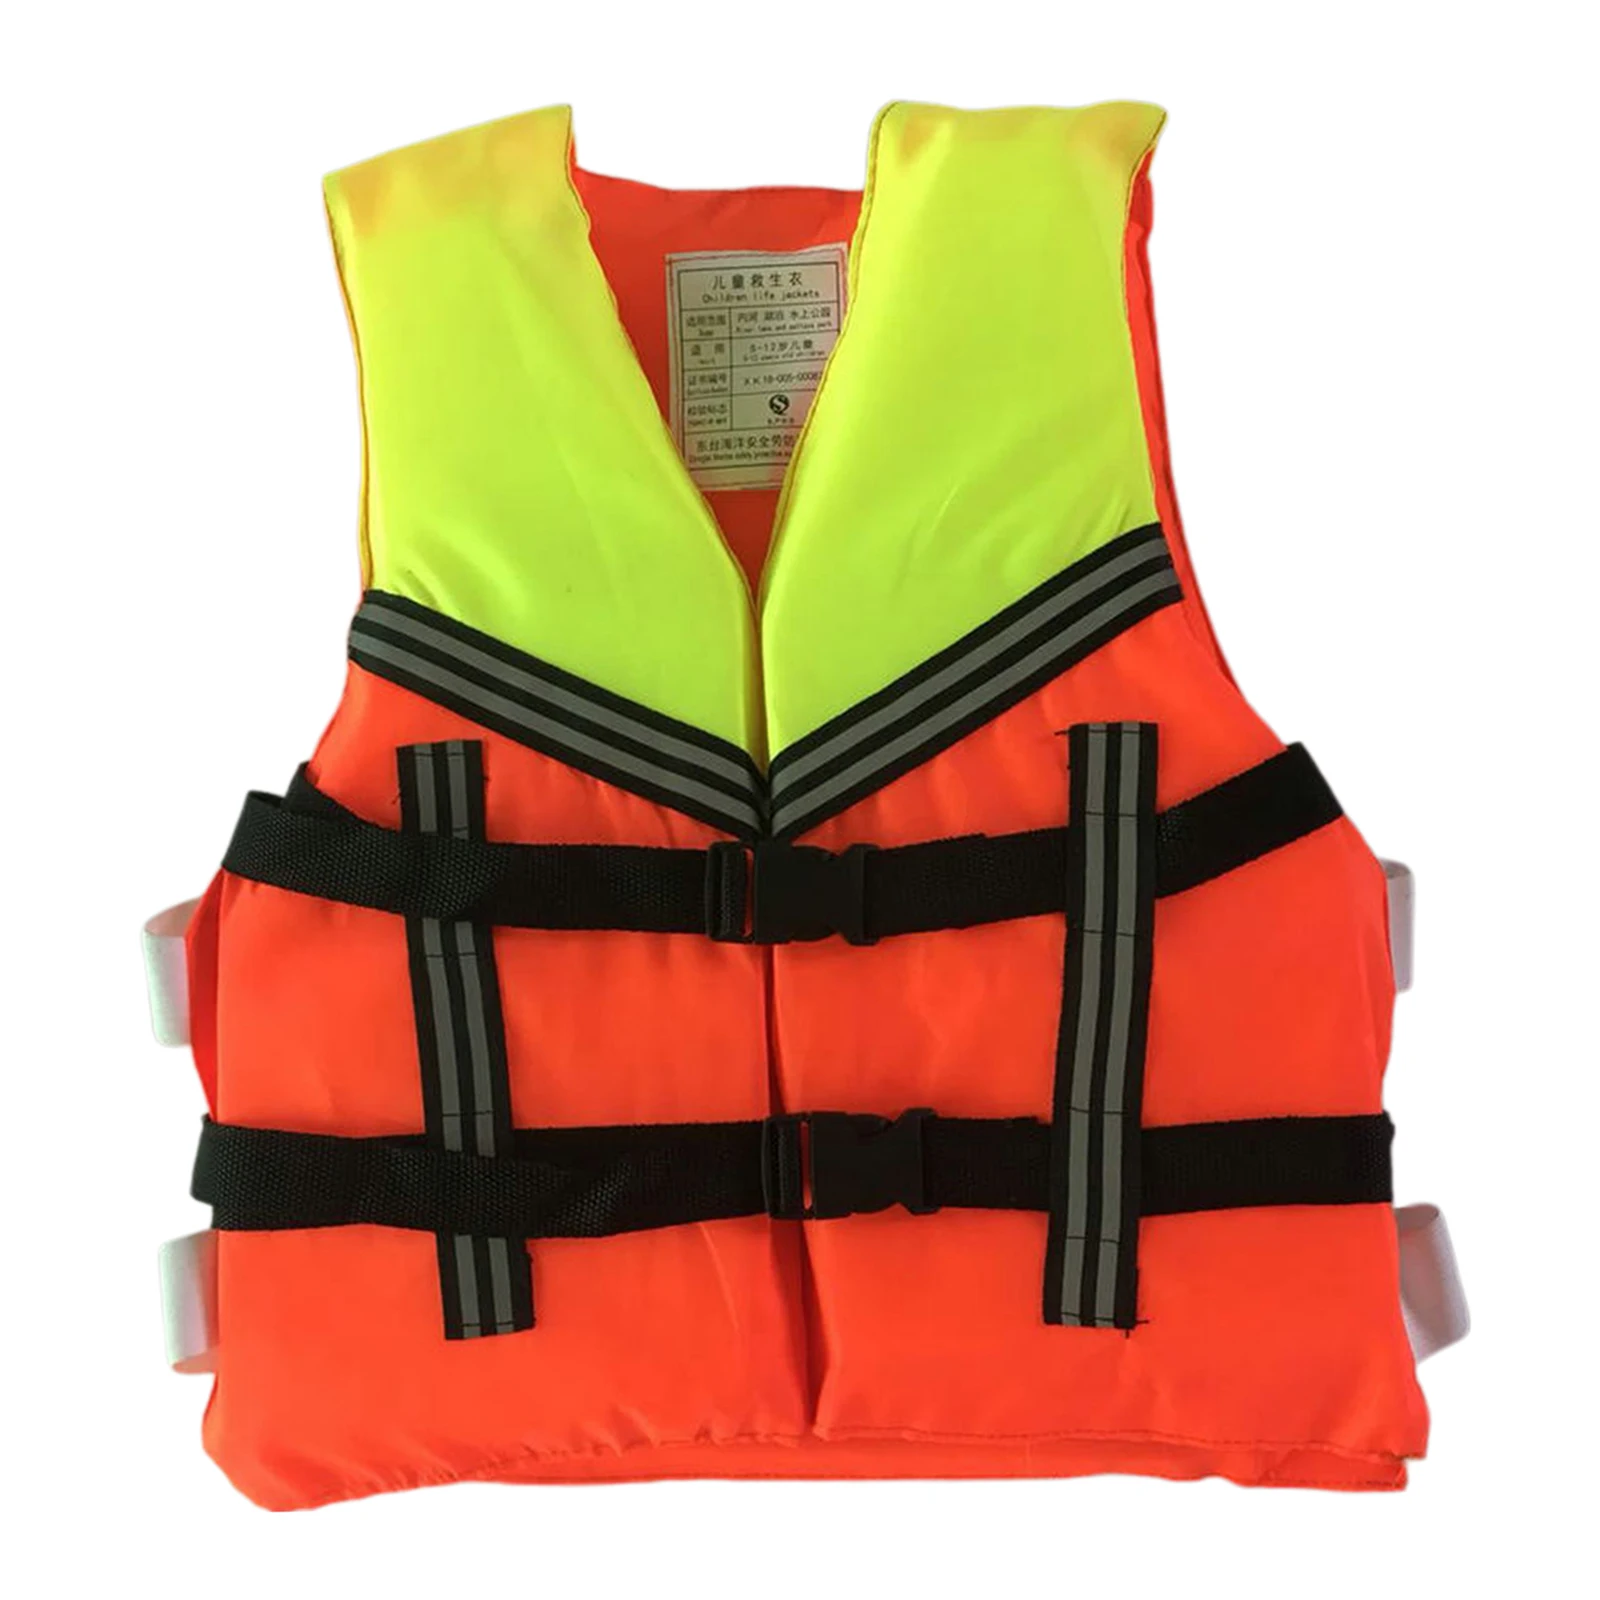 Unisex Float Jacket Kids Swim Vest Life Jacket Boating Children Swimsuit